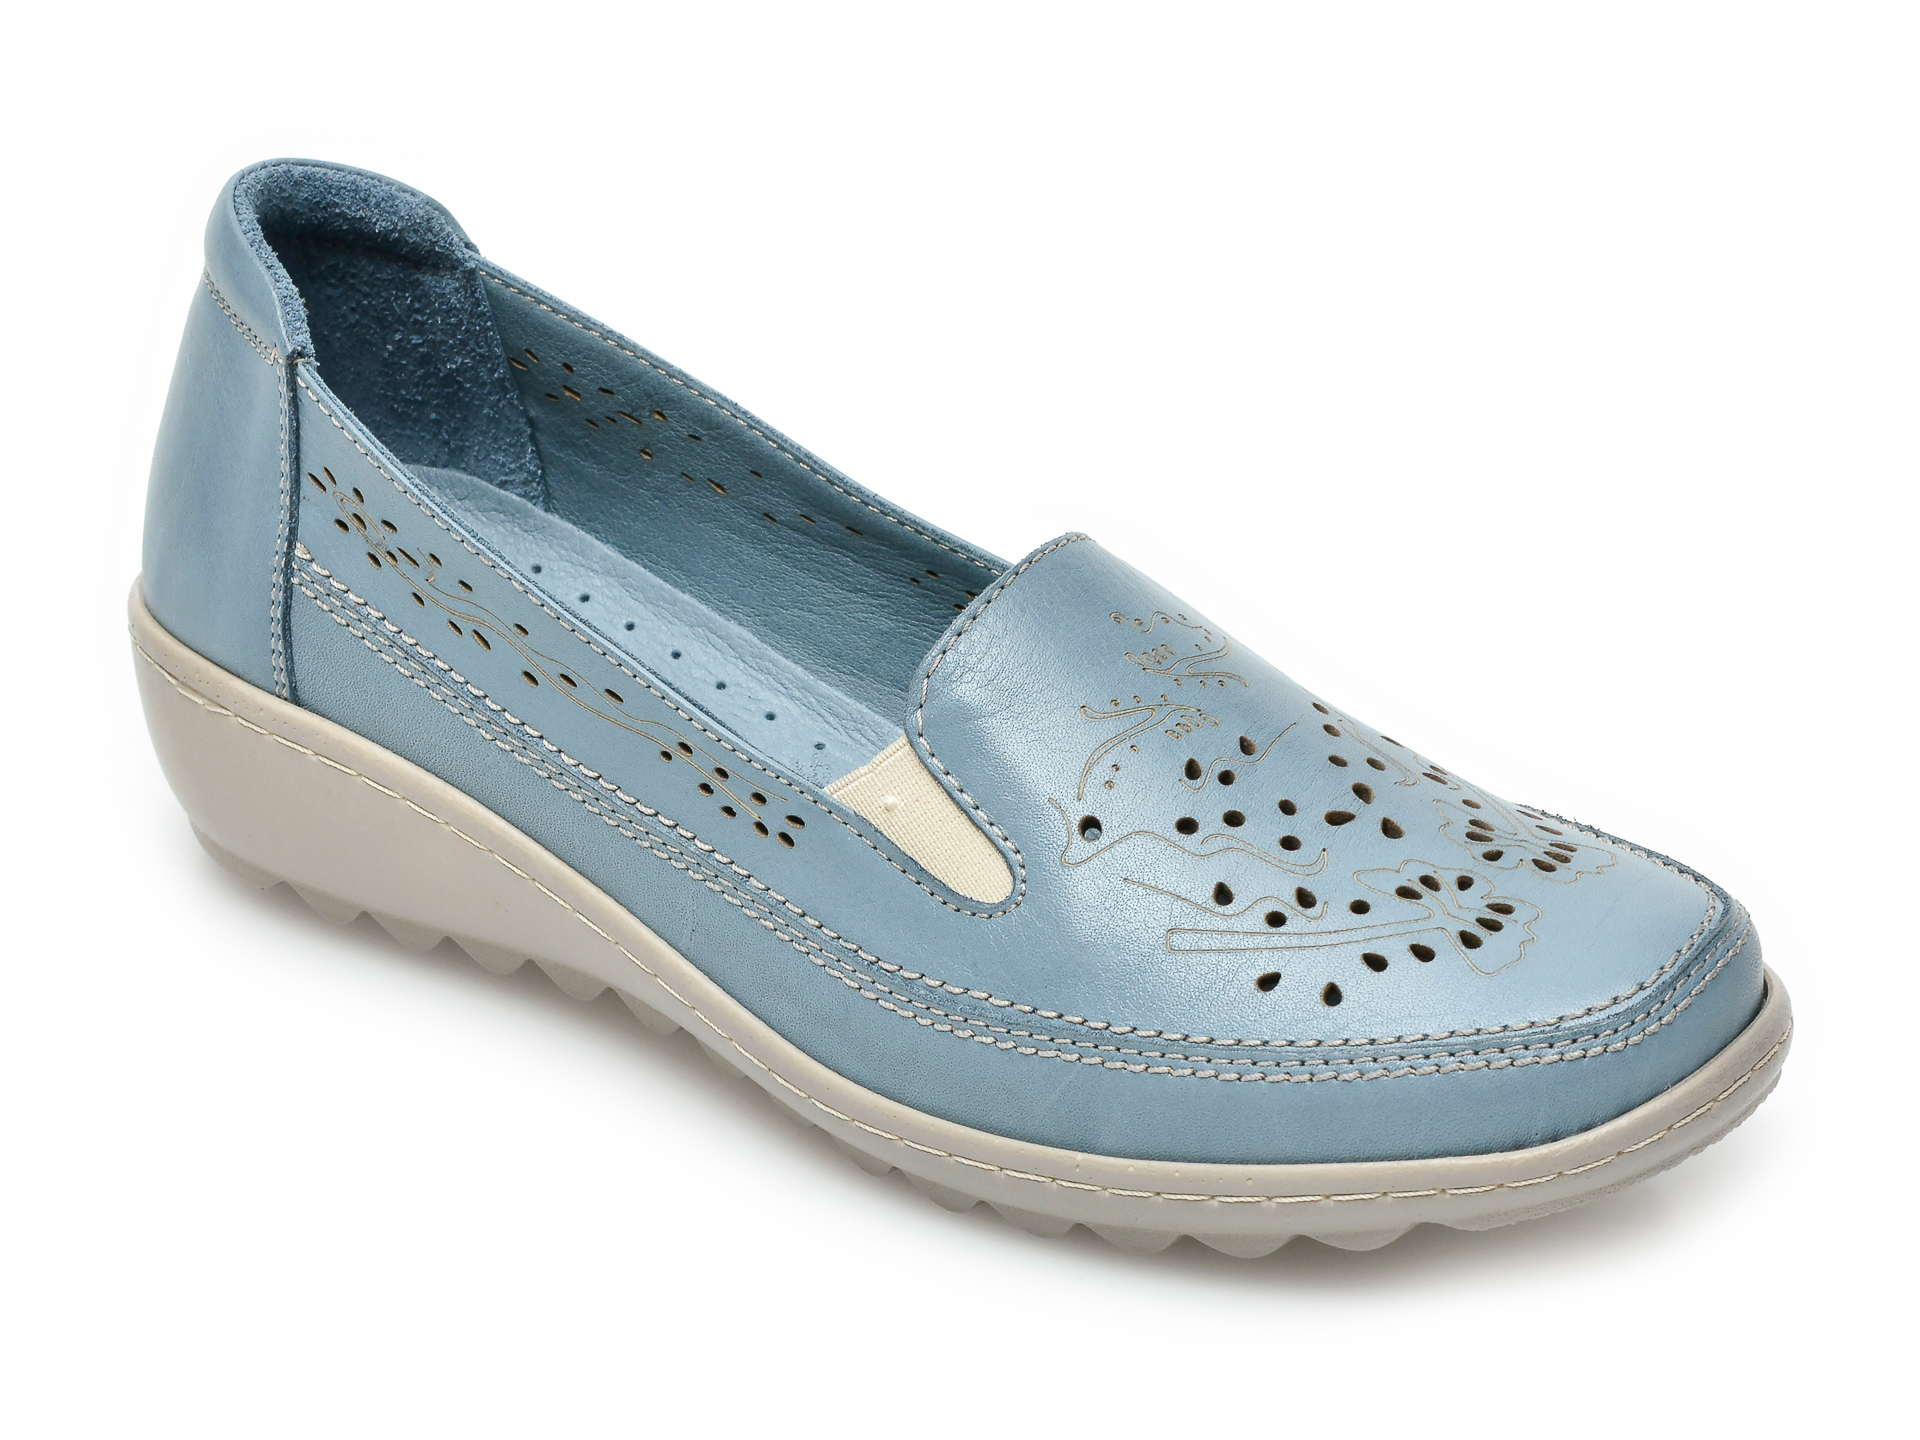 Pantofi PASS COLLECTION albastri, 19715, din piele naturala otter.ro